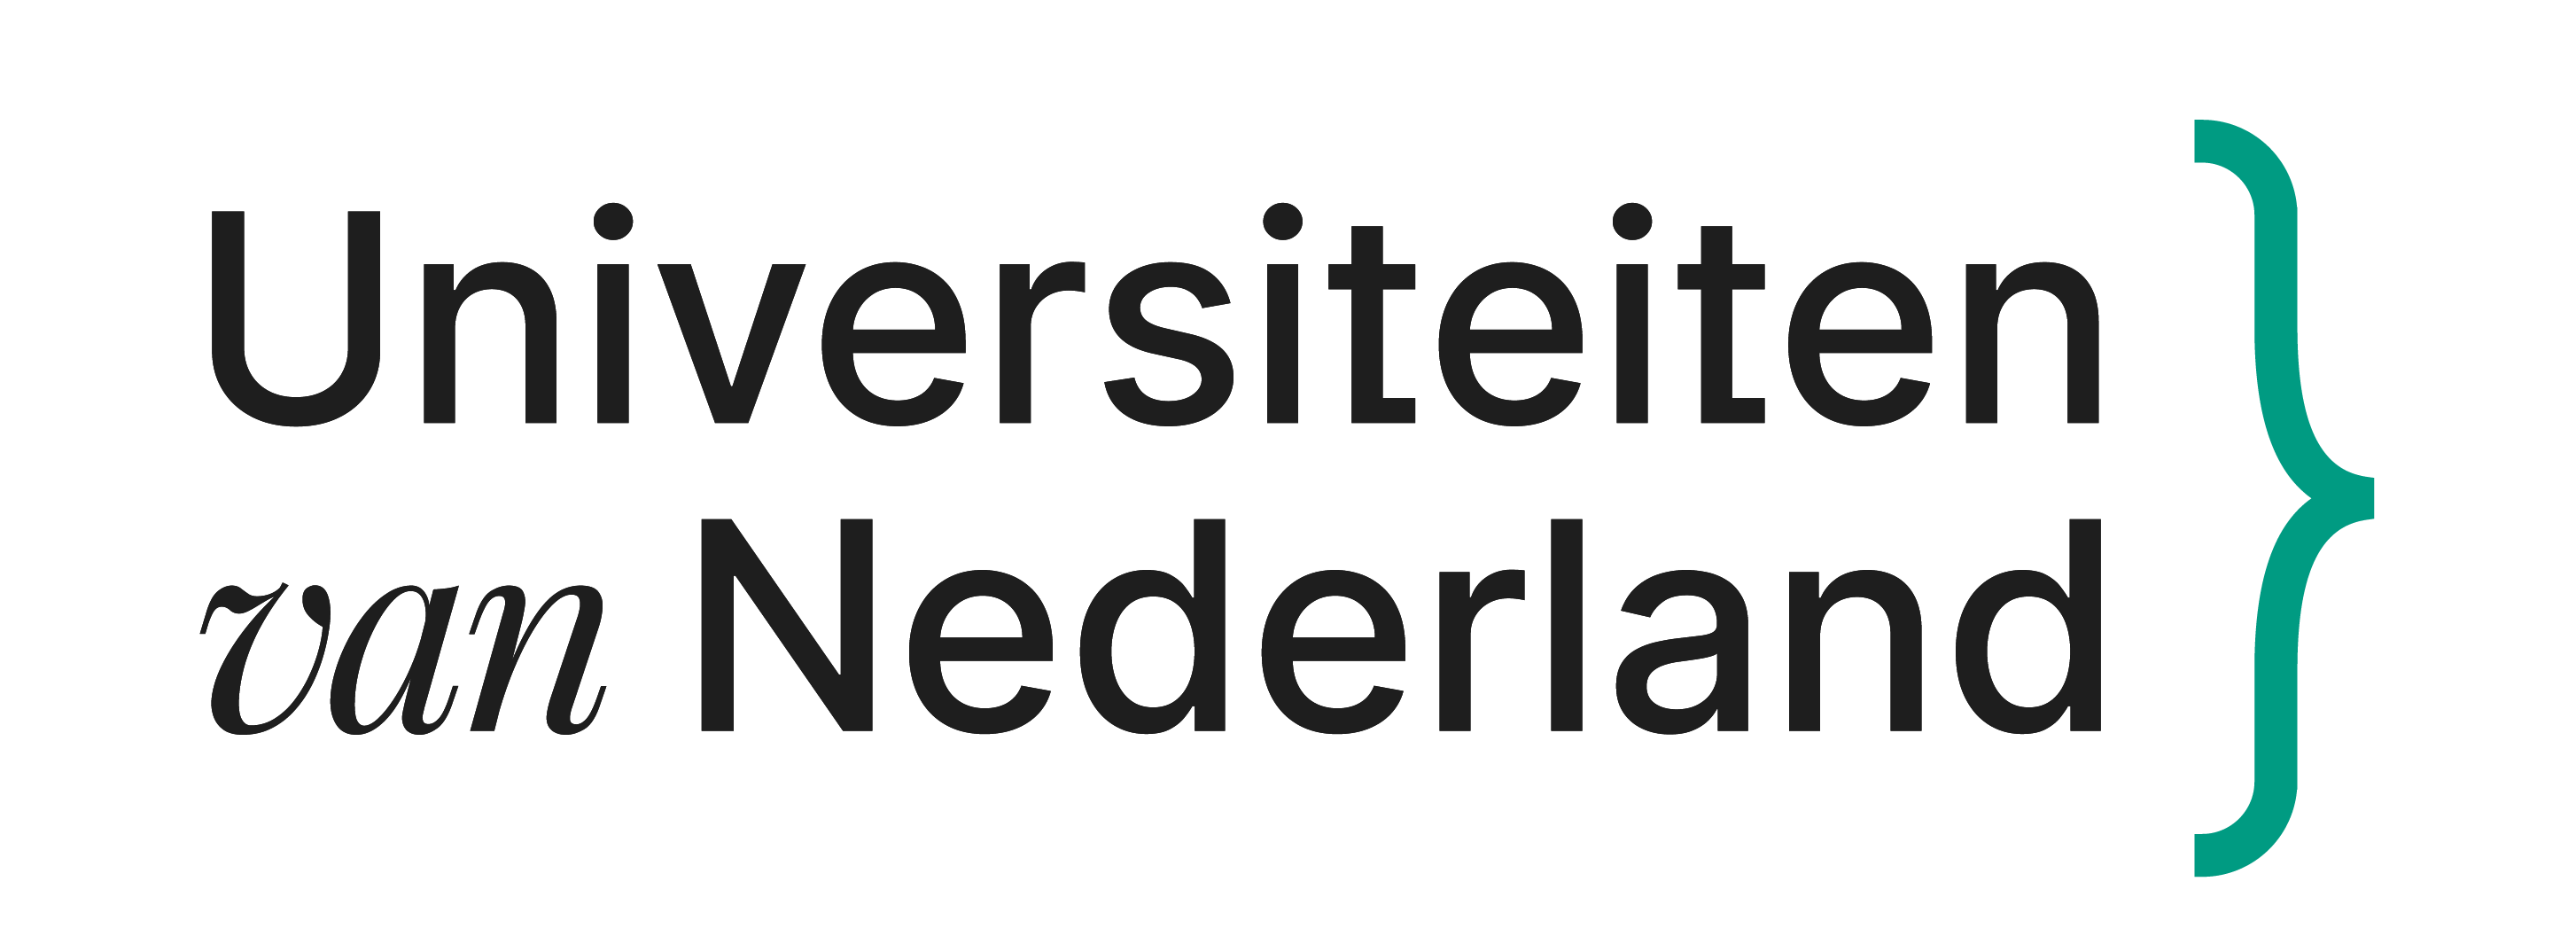 Universiteiten van Nederland